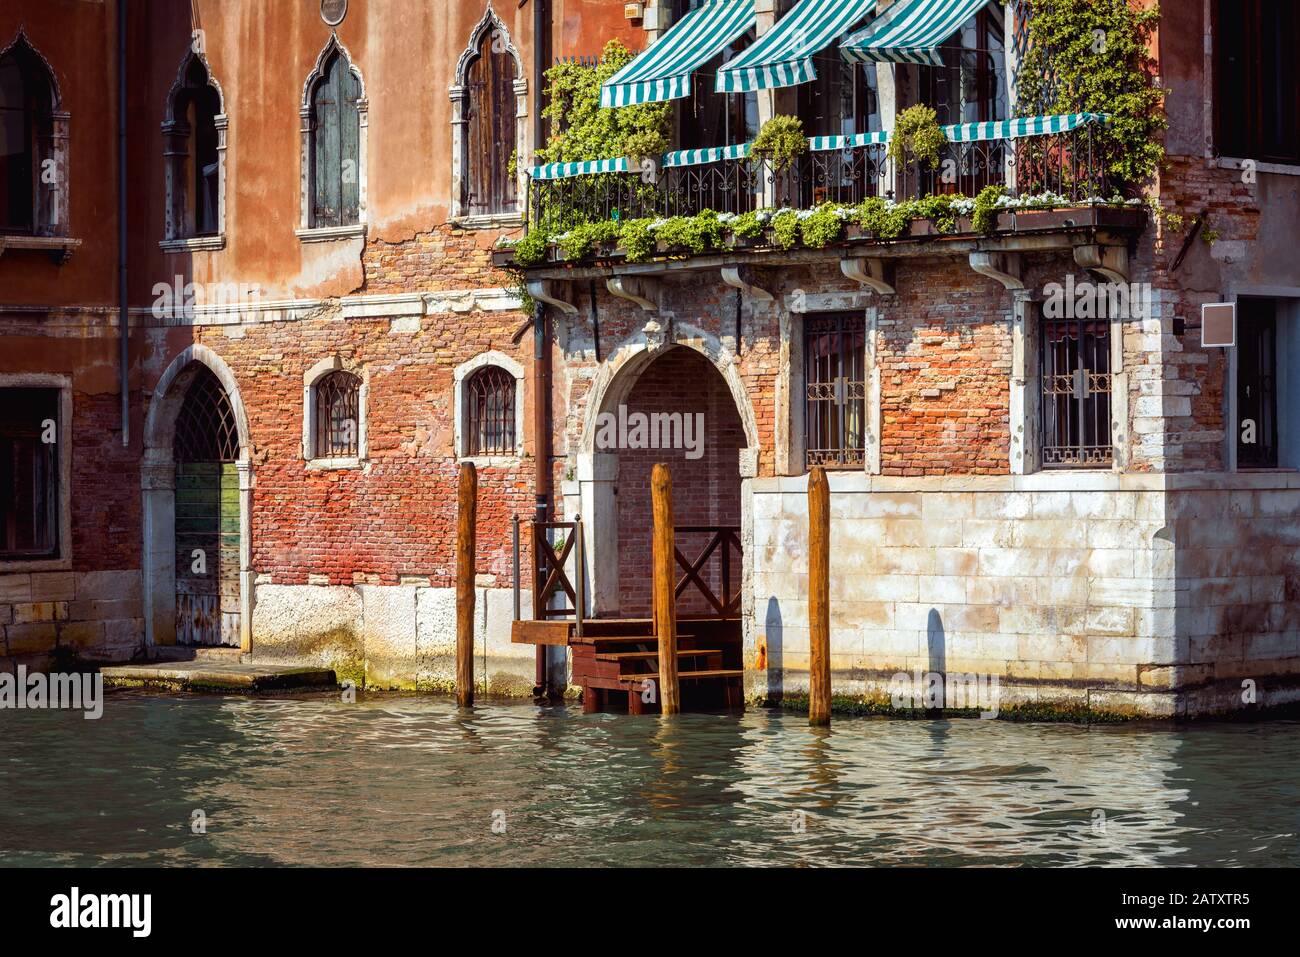 Vintage-Haus, Venedig, Italien. Eingang zum Wohnhaus oder Hotel am Canal Grande, der berühmten Straße von Venedig. Altes Gebäude auf dem Wasser, traditionelle Aussicht Stockfoto